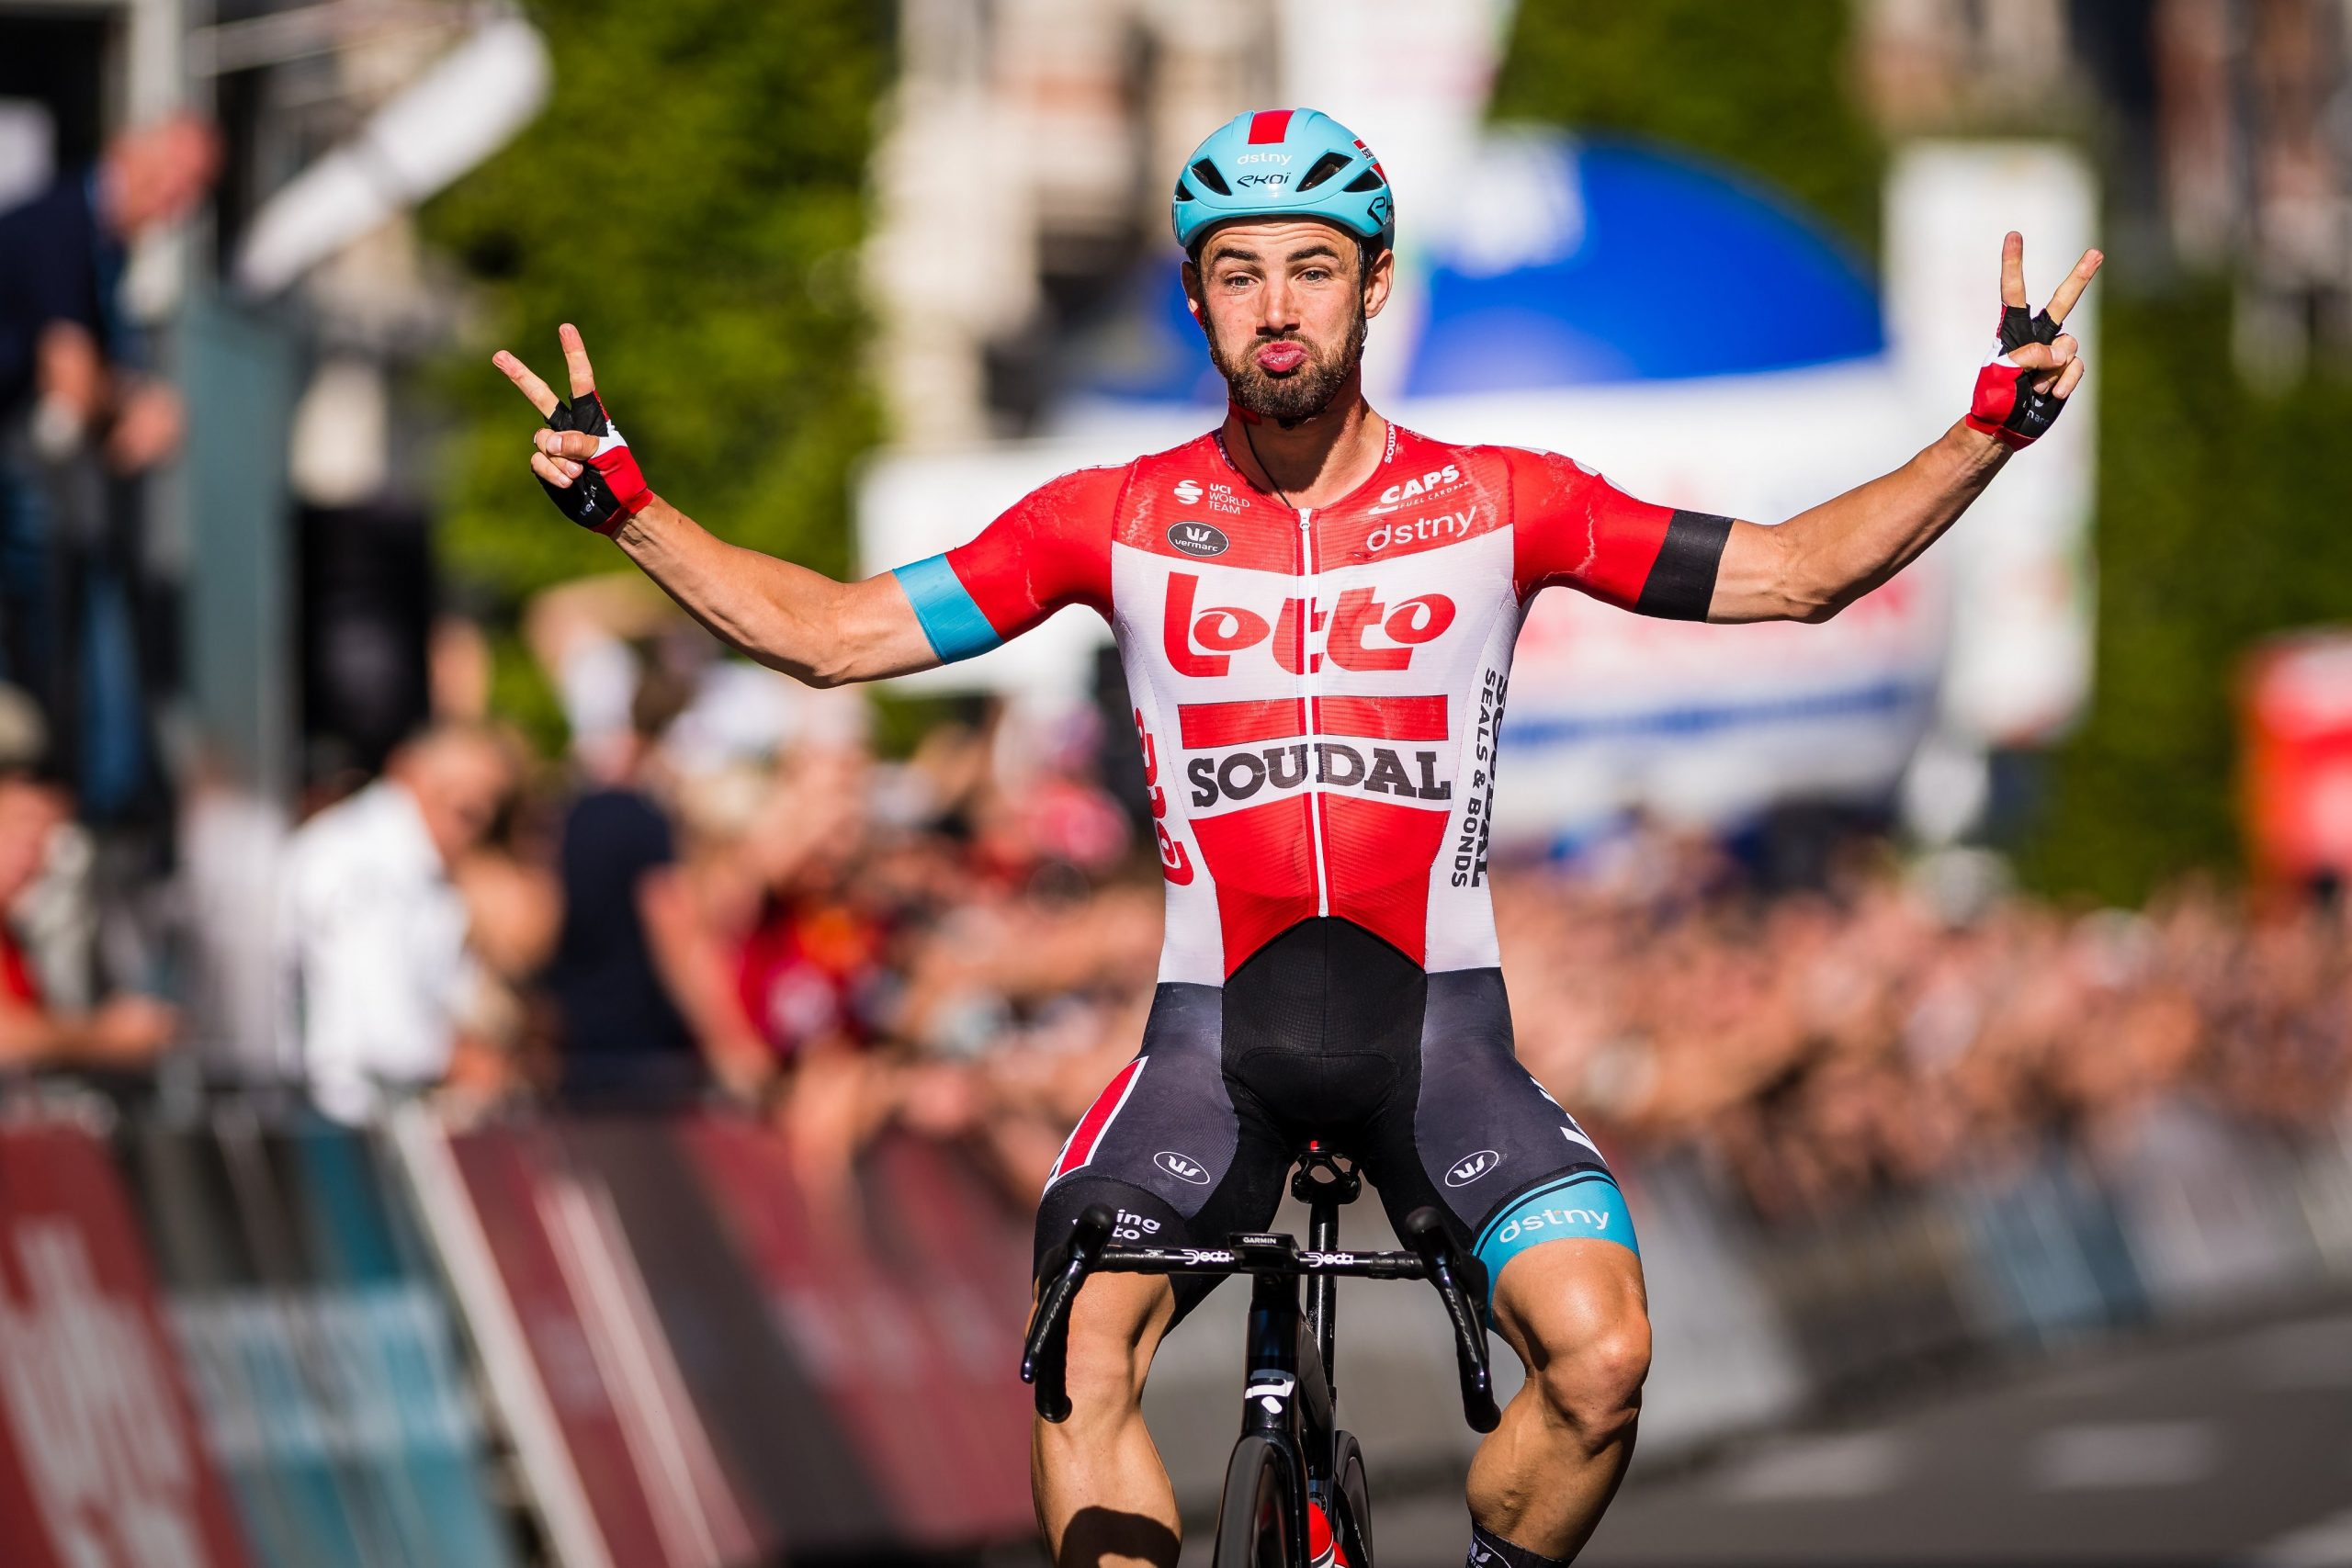 Victor Campenaerts vence o Tour of Leuven e marca pontos importantes para a Lotto Soudal!